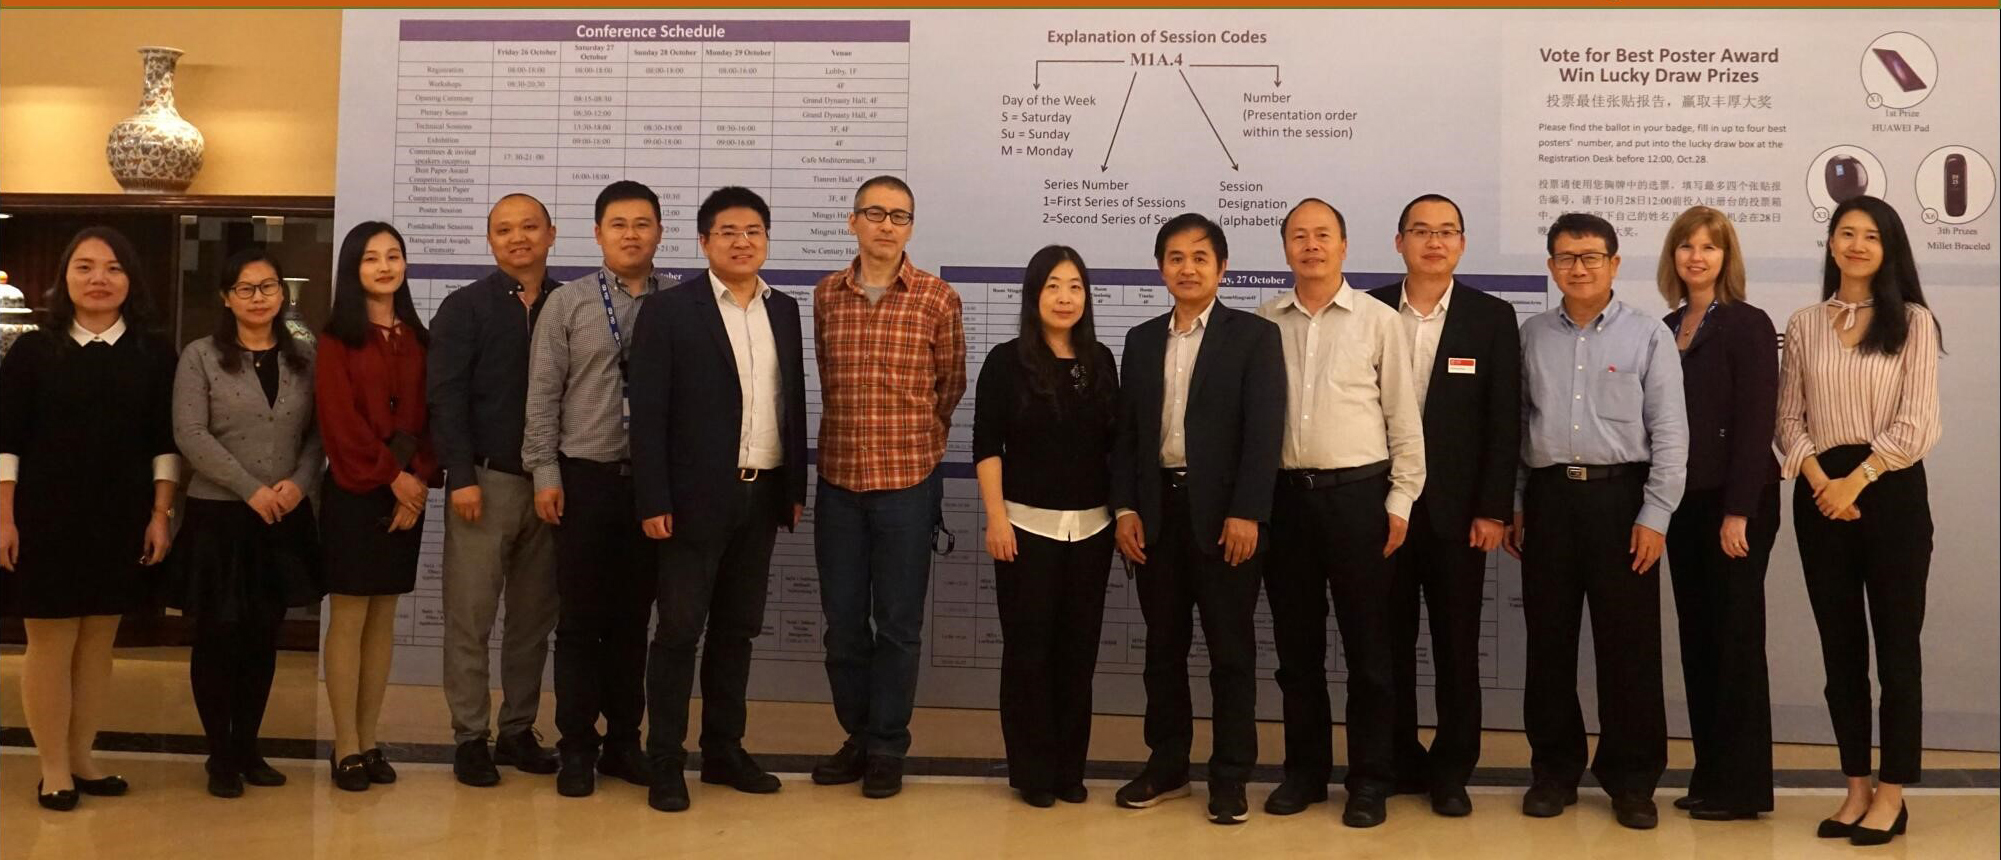 Editorial Board Meeting of Photonics Research,Hangzhou,China,2018